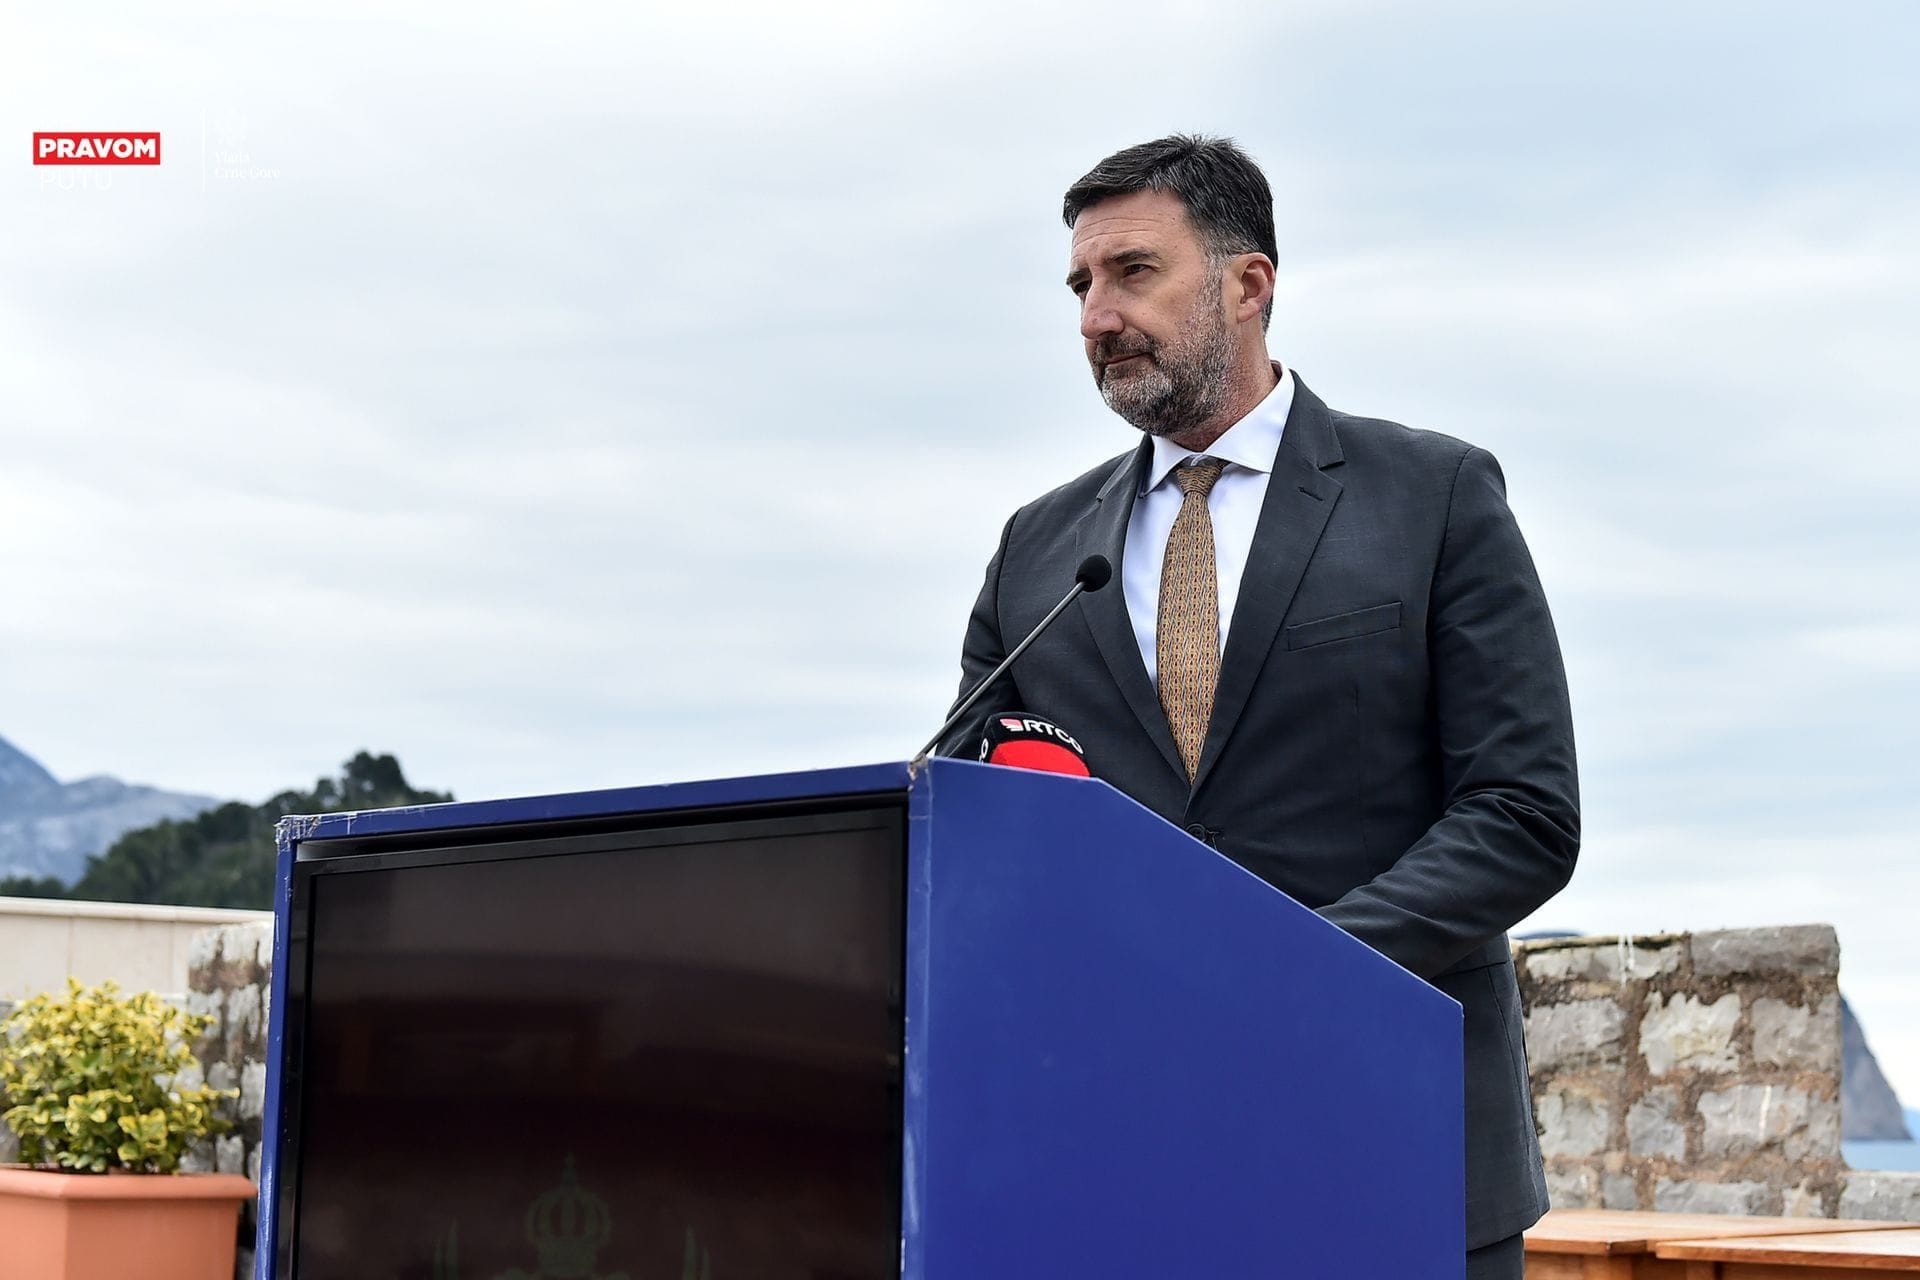 Realizacija projekta MIDAS 2: Ministar Joković u Petrovcu predstavio uspješne rezultate u modernizaciji sektora ribarstva